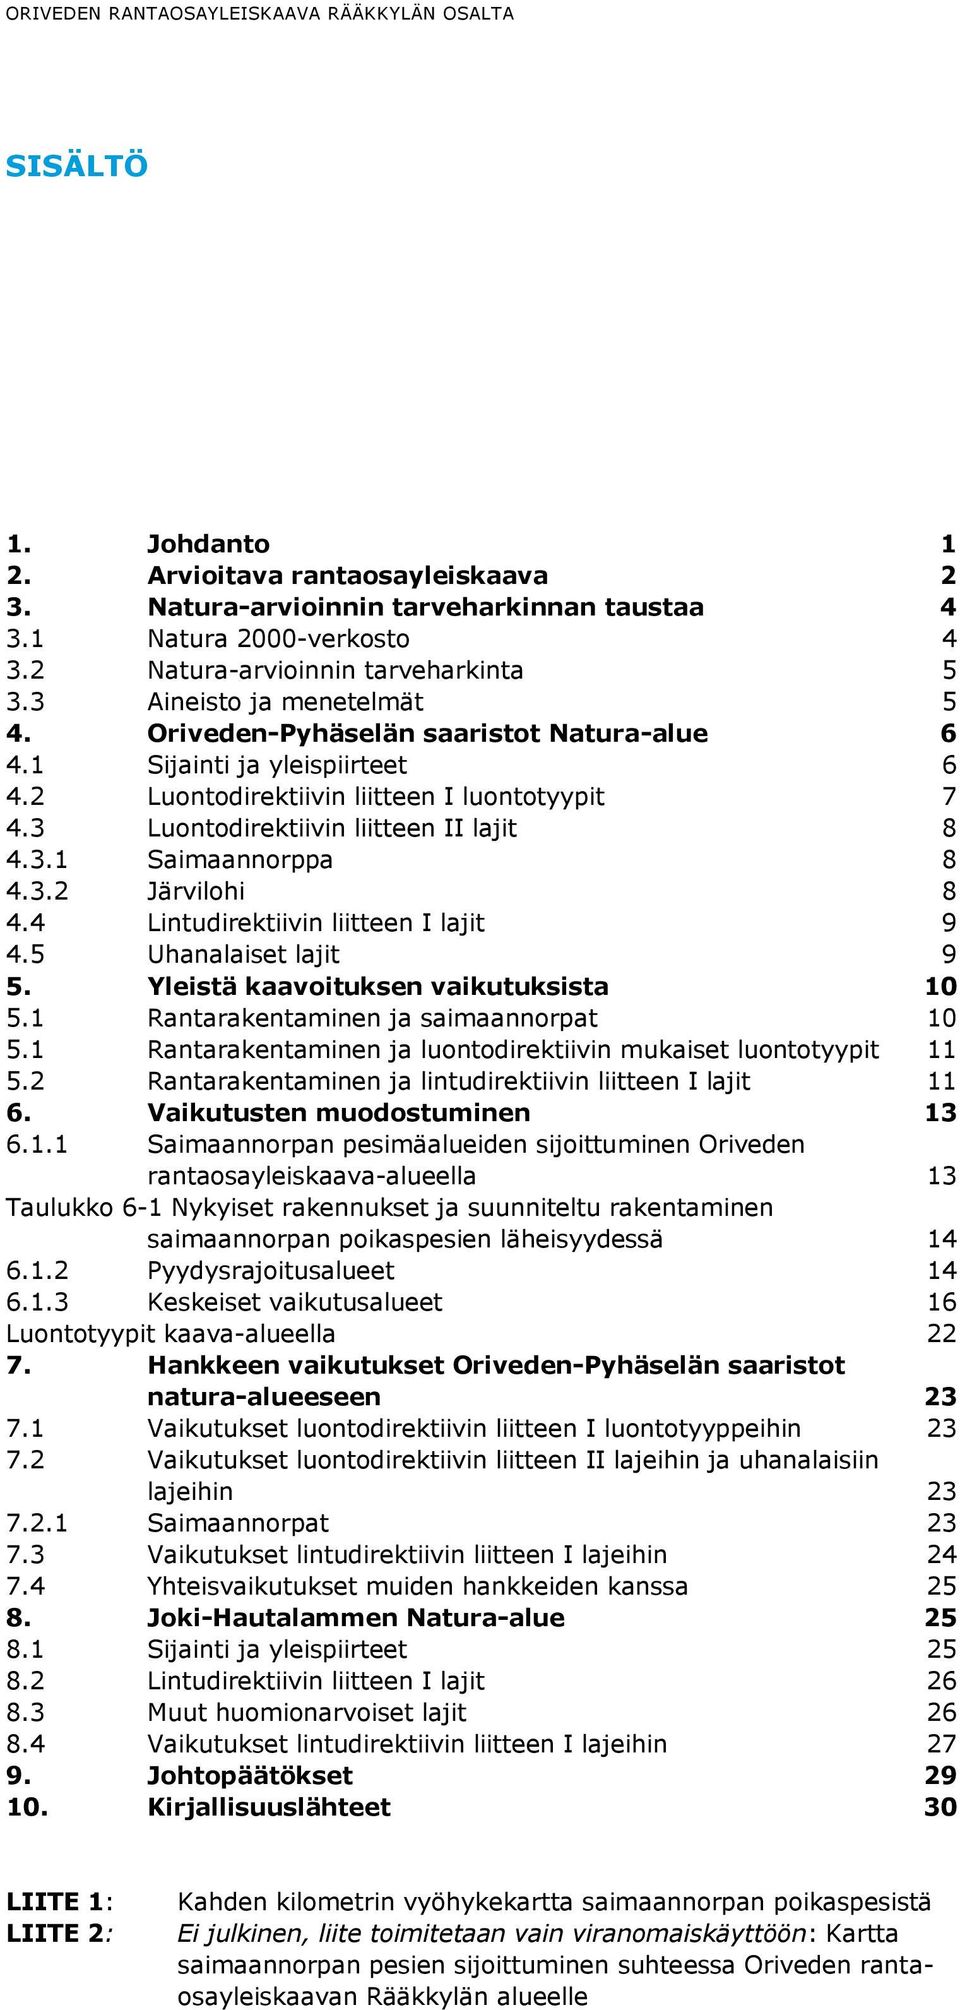 3 Luontodirektiivin liitteen II lajit 8 4.3.1 Saimaannorppa 8 4.3.2 Järvilohi 8 4.4 Lintudirektiivin liitteen I lajit 9 4.5 Uhanalaiset lajit 9 5. Yleistä kaavoituksen vaikutuksista 10 5.